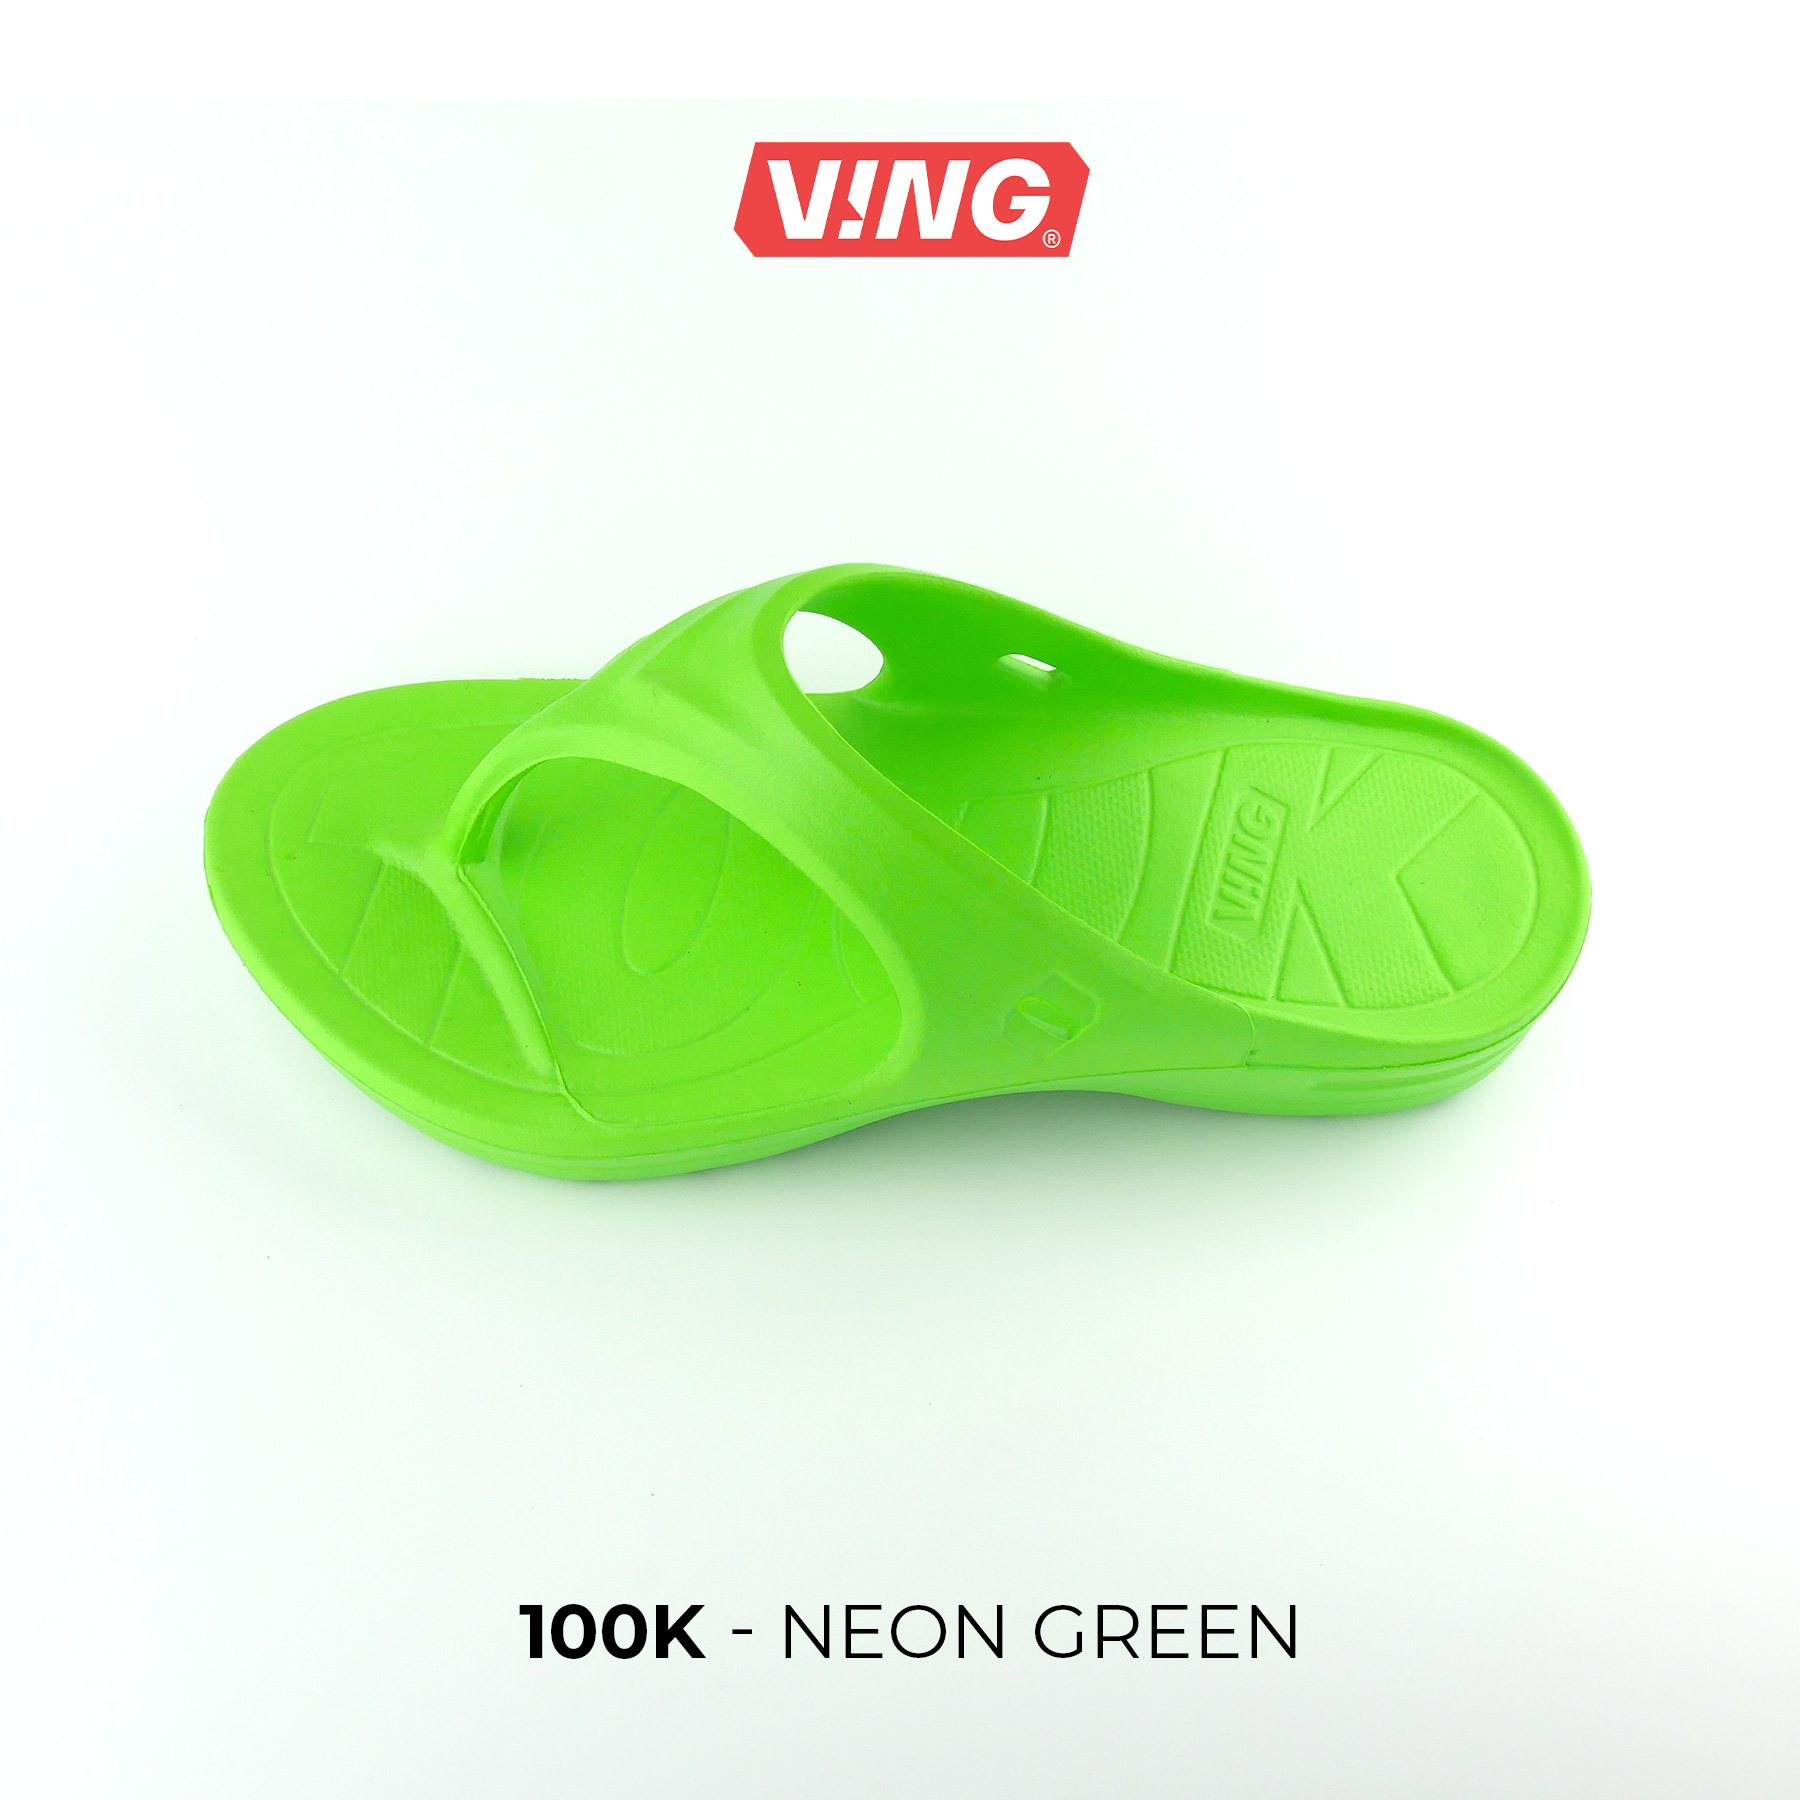 รองเท้าแตะวิ่งมาราธอน VING รุ่น 100K - สีเขียว Neon Green (รวมสายรัดข้อเท้า เลือกสีได้) Running Sandals - รองเท้าแตะสุขภาพ [ส่งฟรี]